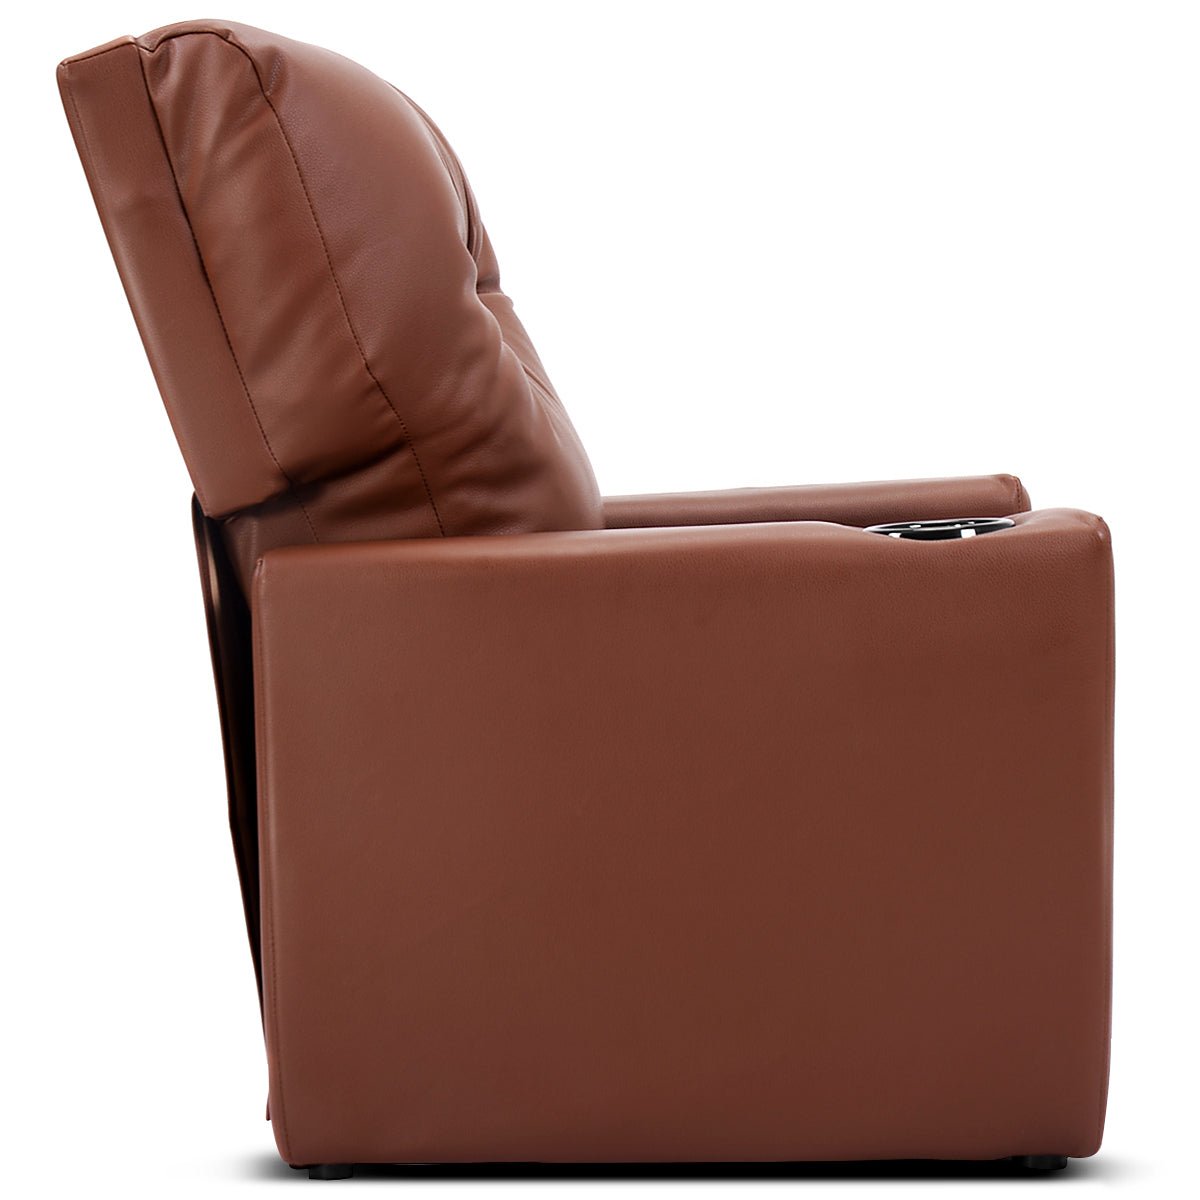 Brown Kids Lounge Seat: Adjustable Comfort with Armrest and High Backrest